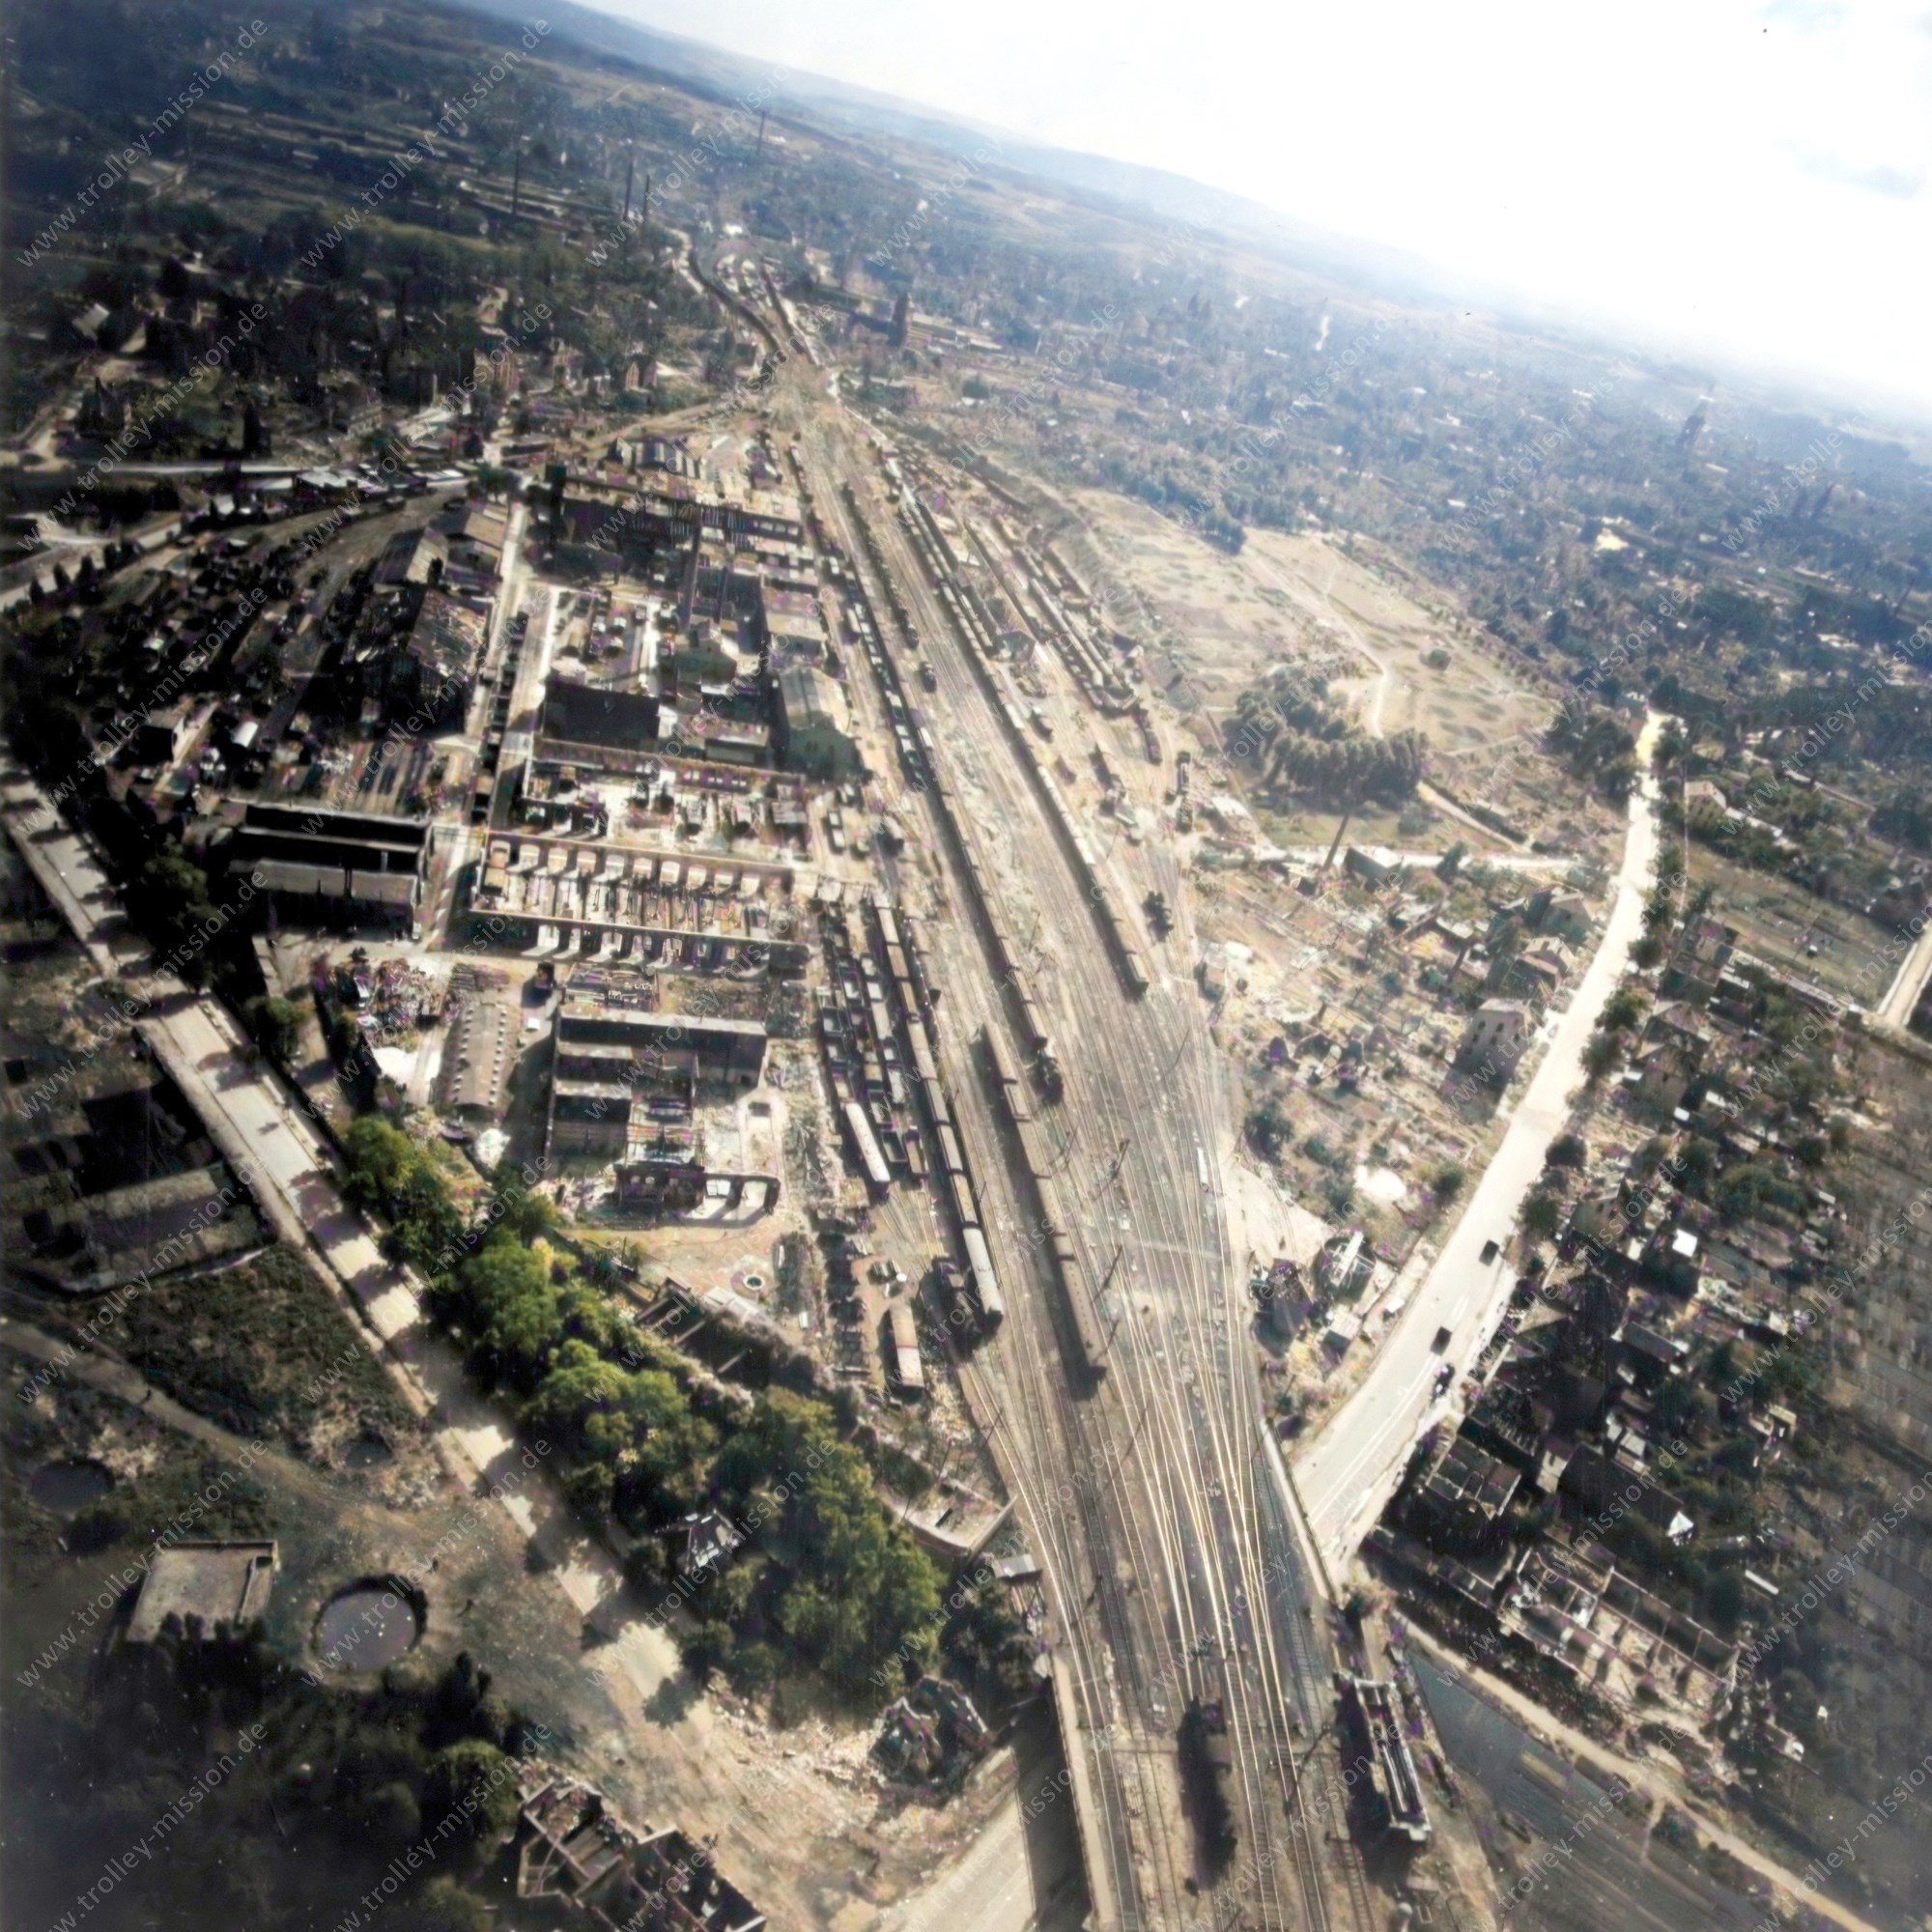 Künstlich nachkolorierte Luftaufnahme des Ausbesserungswerk Osnabrück im Zweiten Weltkrieg